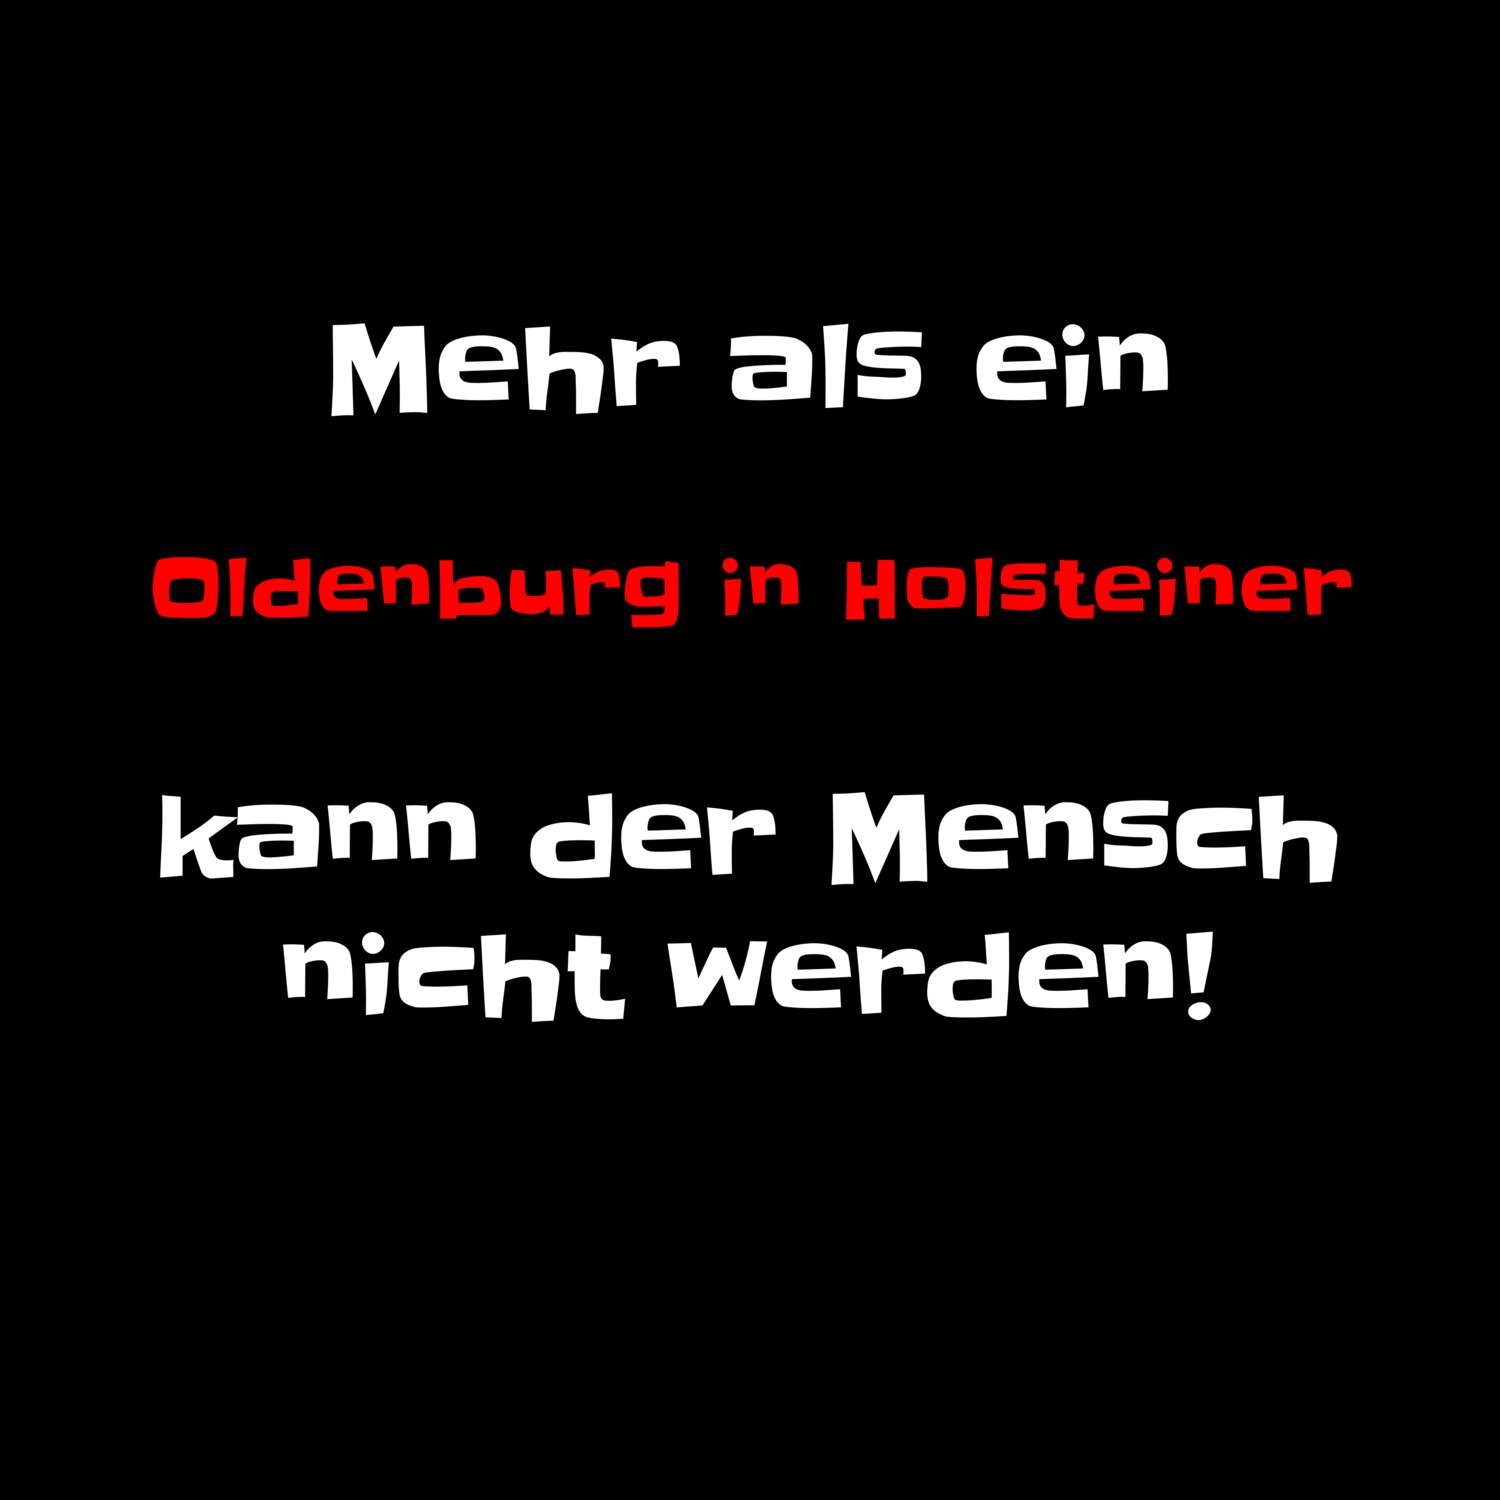 Oldenburg in Holstein T-Shirt »Mehr als ein«